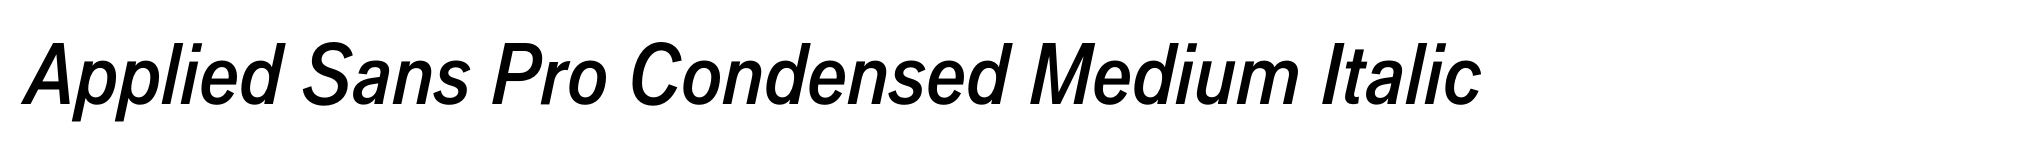 Applied Sans Pro Condensed Medium Italic image